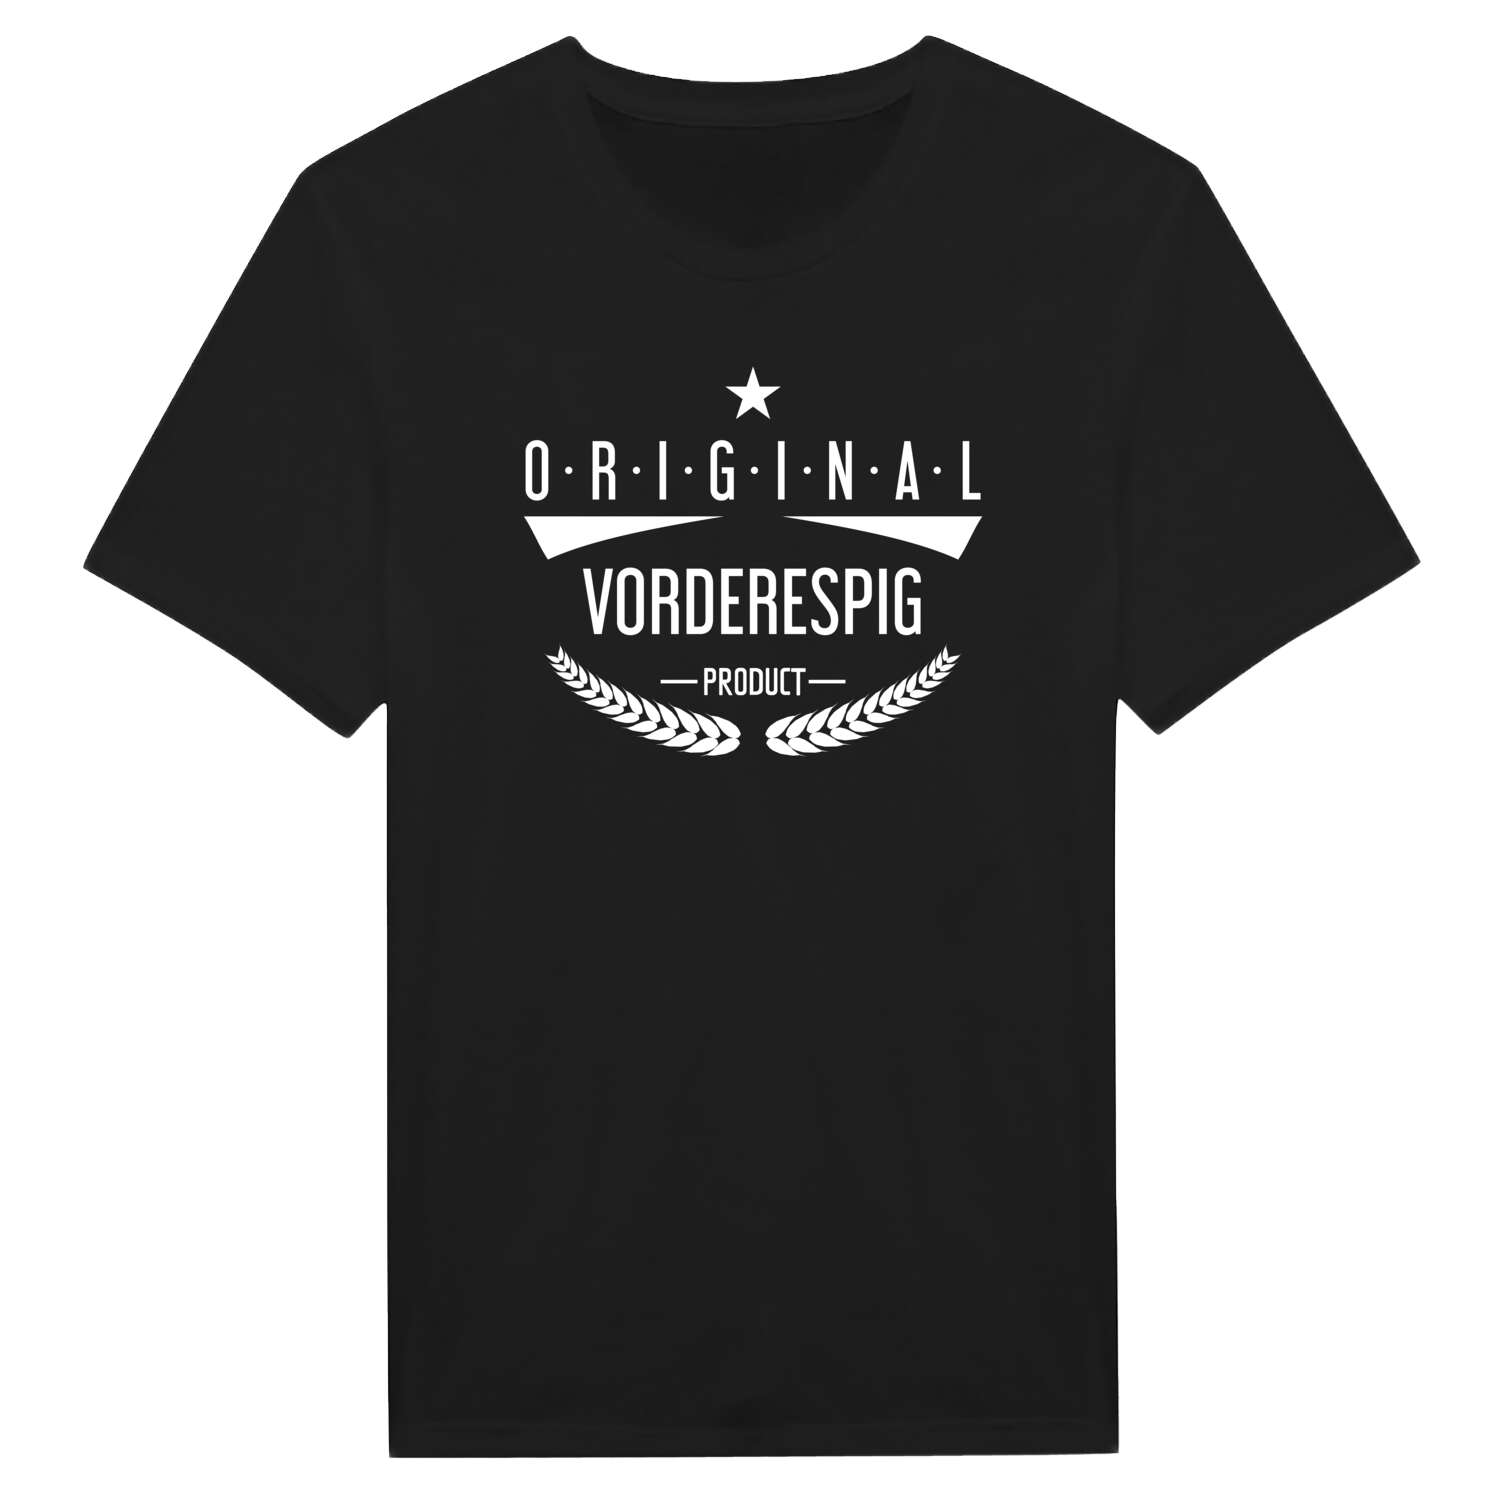 Vorderespig T-Shirt »Original Product«